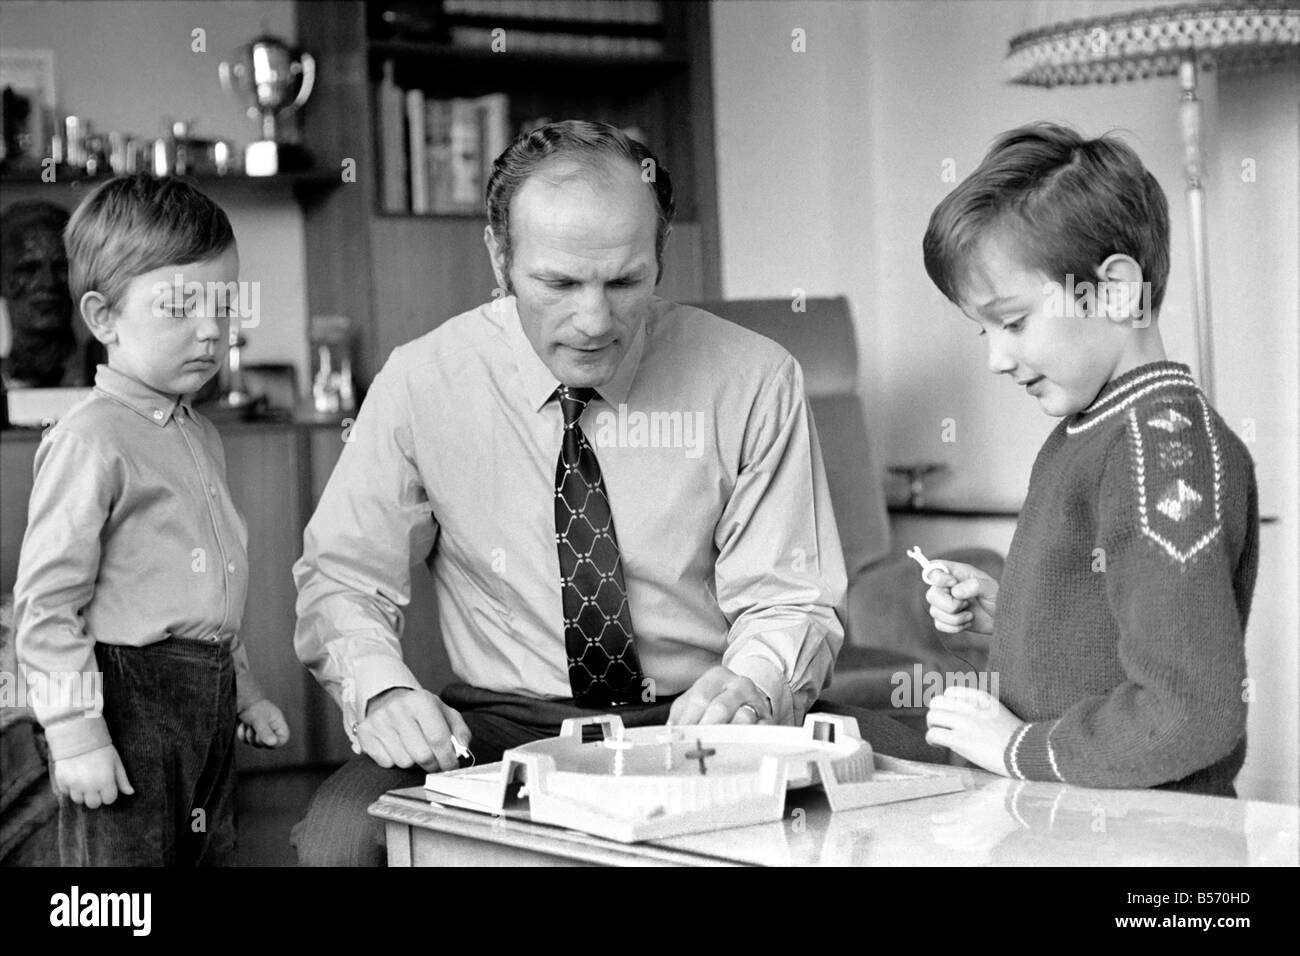 Le boxeur britannique Henry Cooper photographiée avec fils Henry Marco âgés de 10 (à droite) et 3 ans John Pietro jouant avec un jeu de toupies à Wembley son accueil. Décembre 1970 ;70-11690-005 Banque D'Images